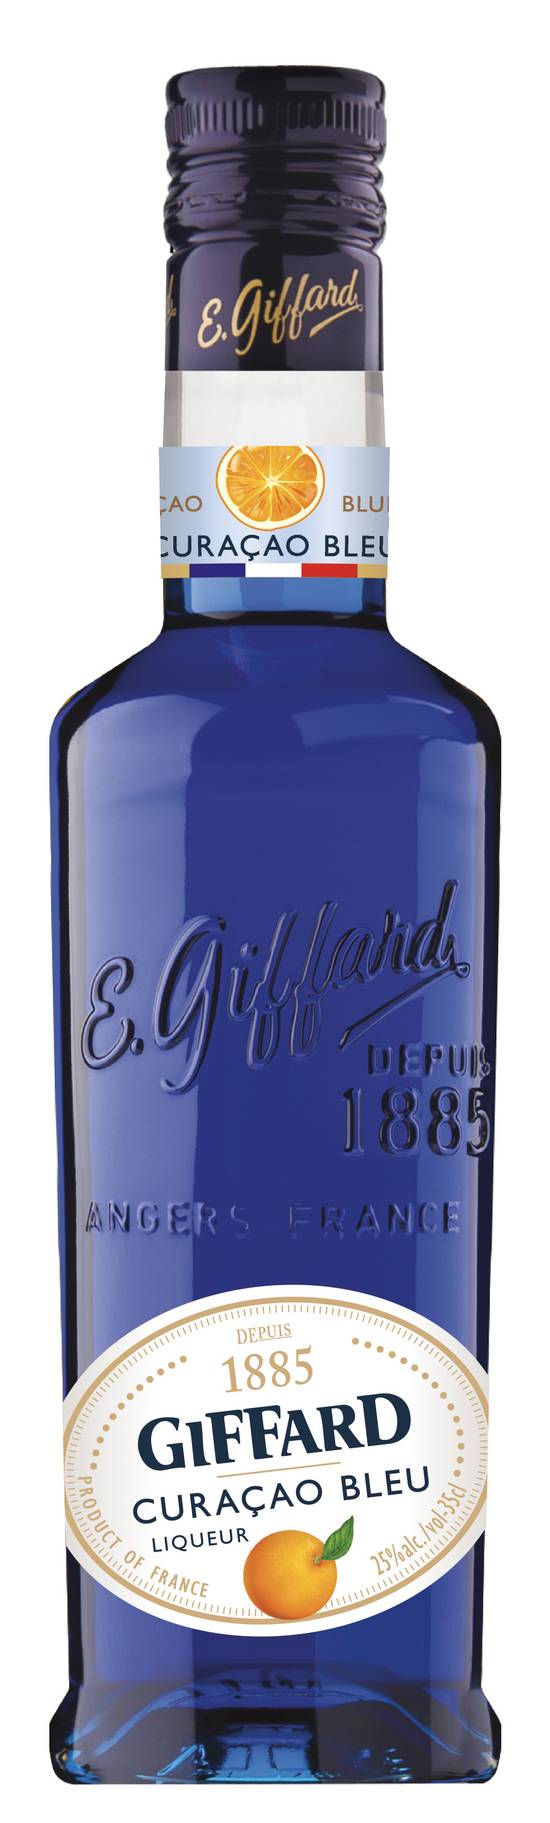 Giffard - Liqueur curaçao bleu (350 ml)